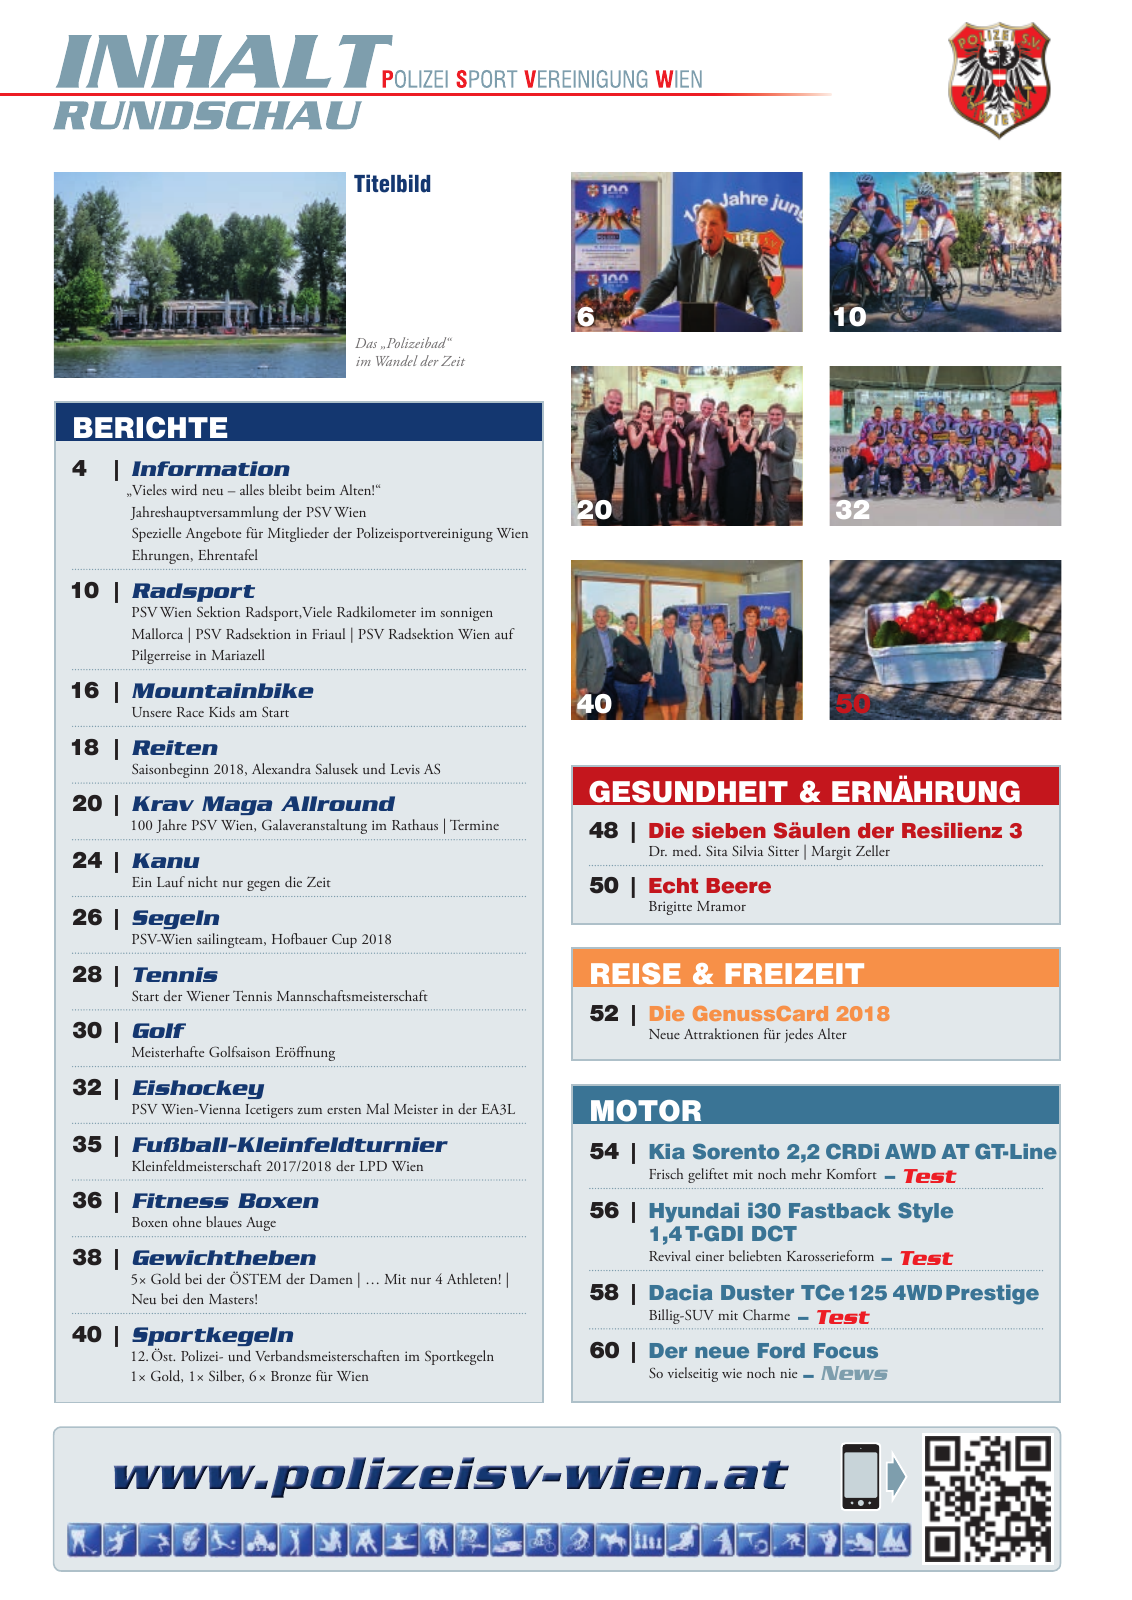 Vorschau Rundschau Polizei Sport 05-06/2018 Seite 3